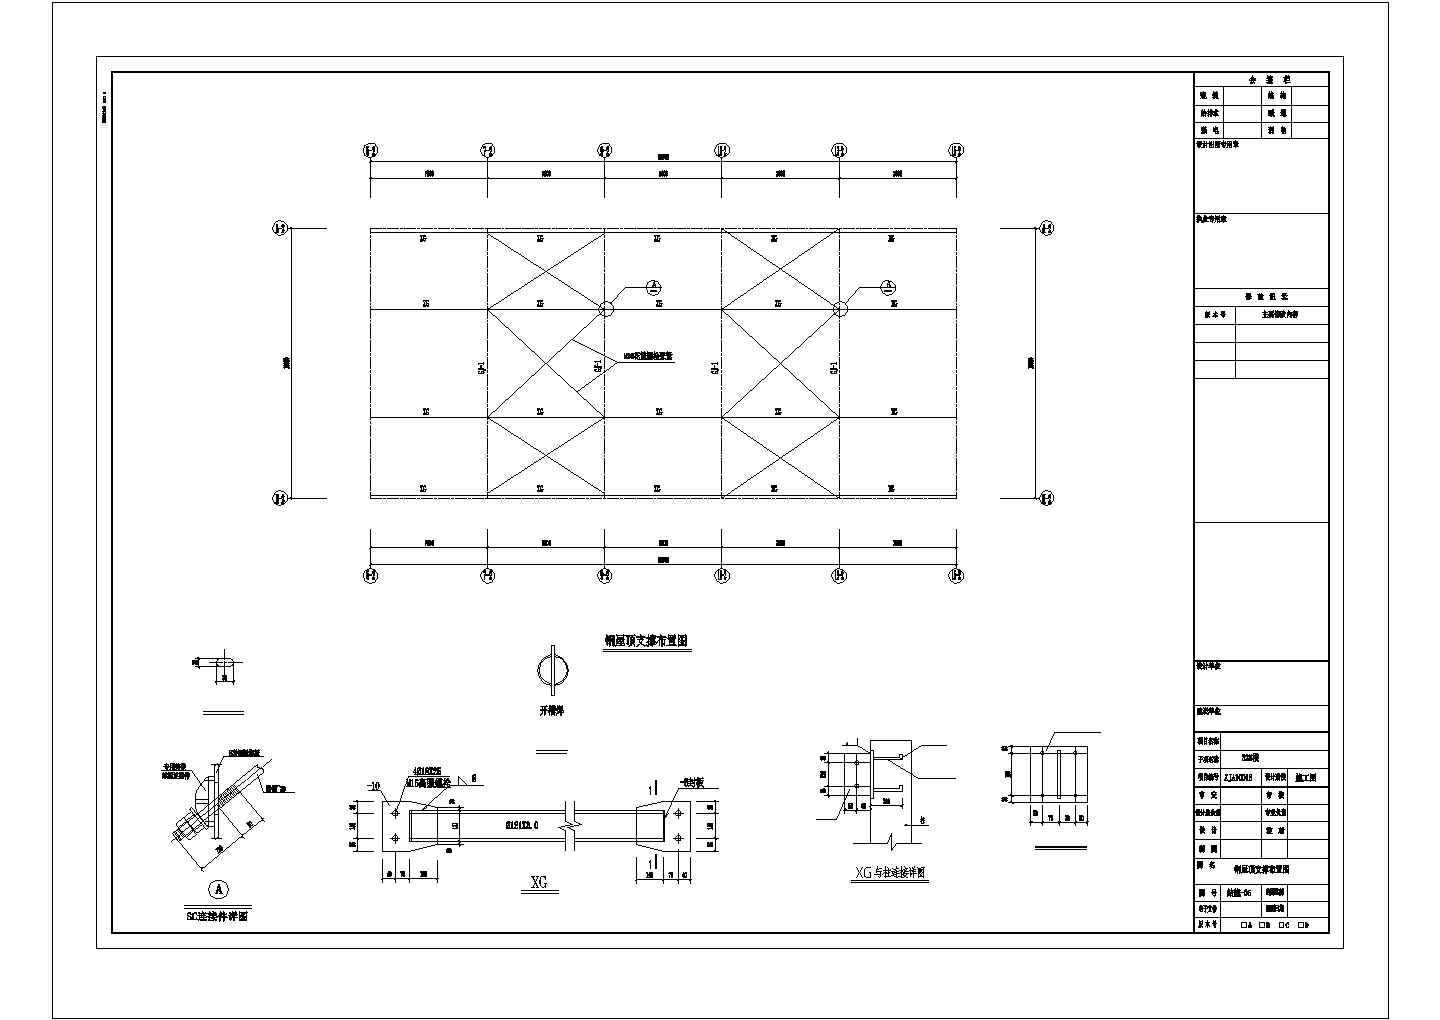 11层混凝土框架办公楼结构施工图(平法)